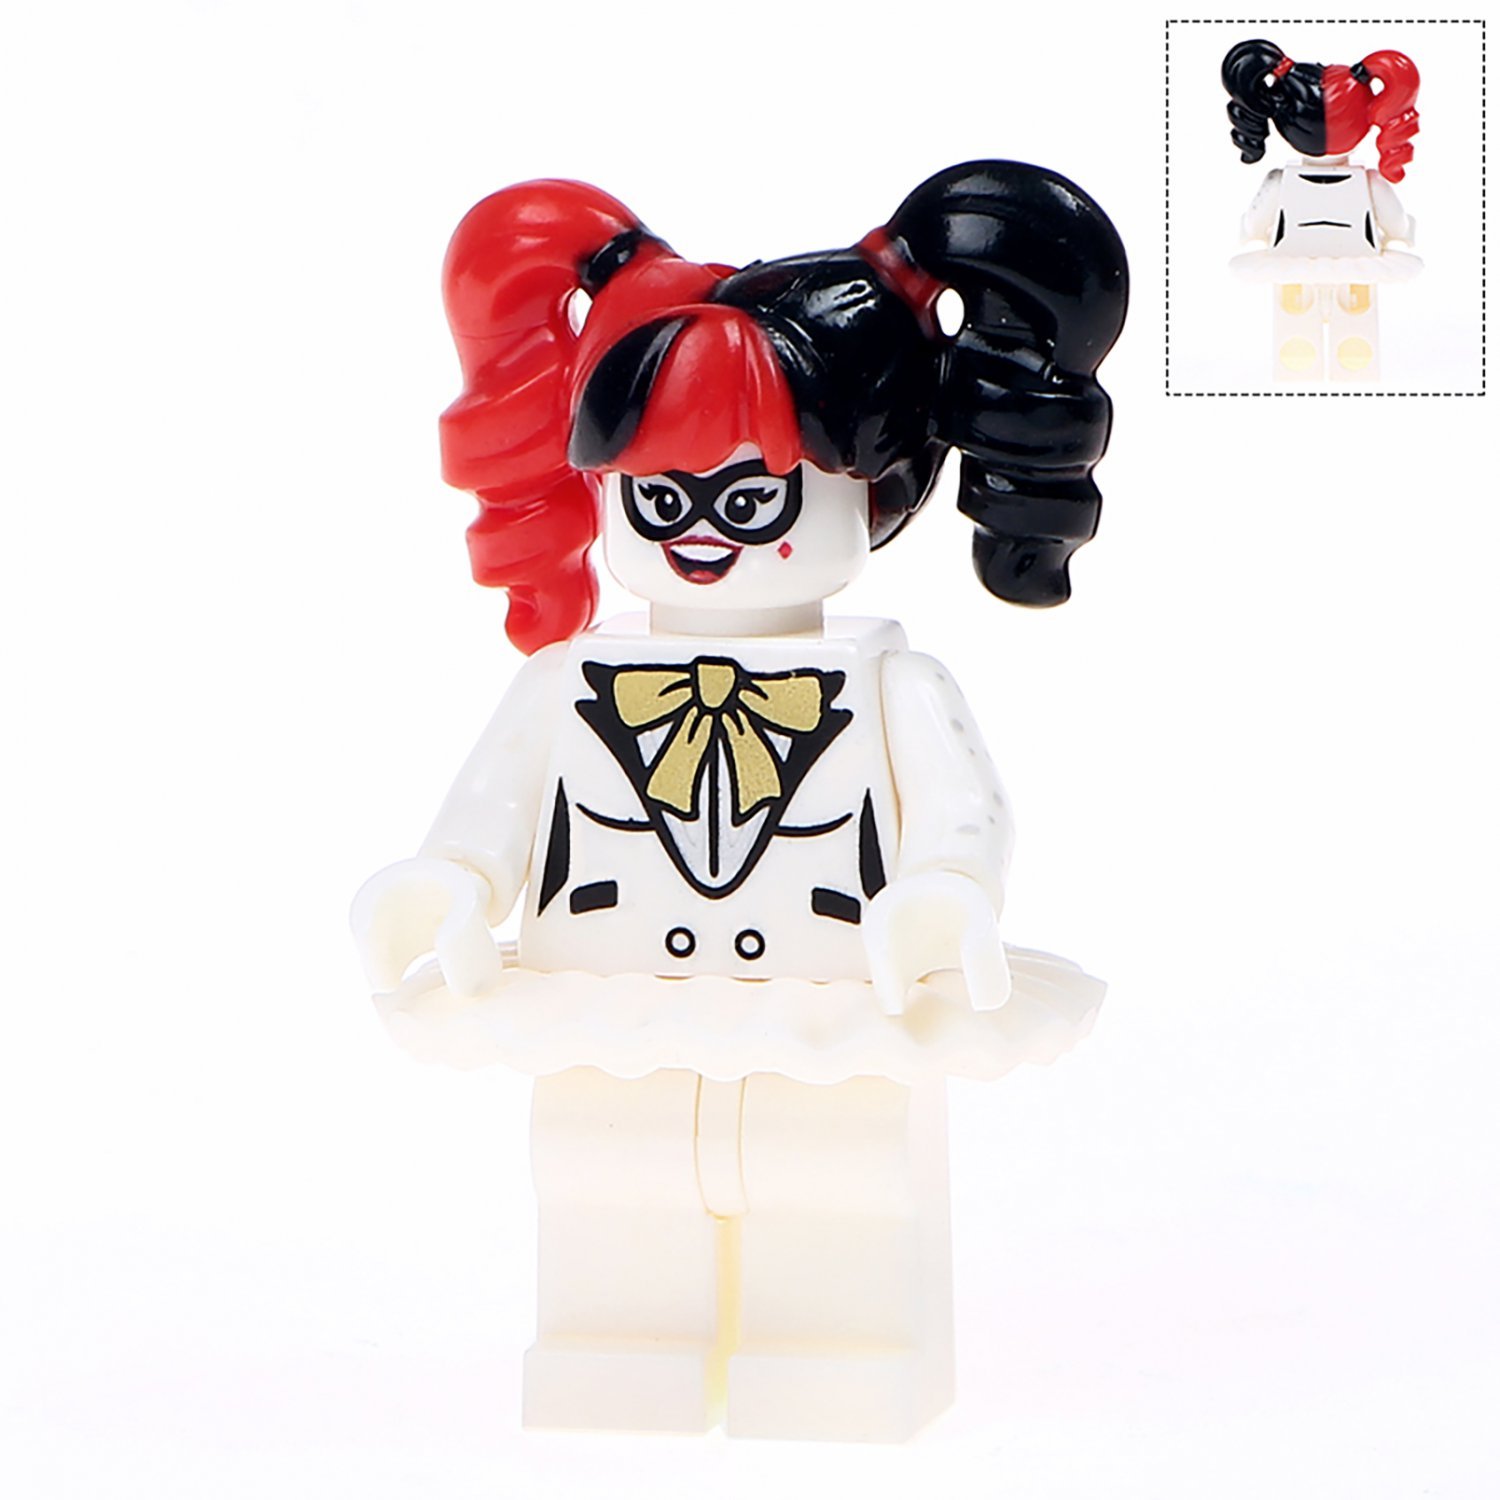 Minifigure Harley Quinn DC Comics Super Heroes Compatible Lego Building ...